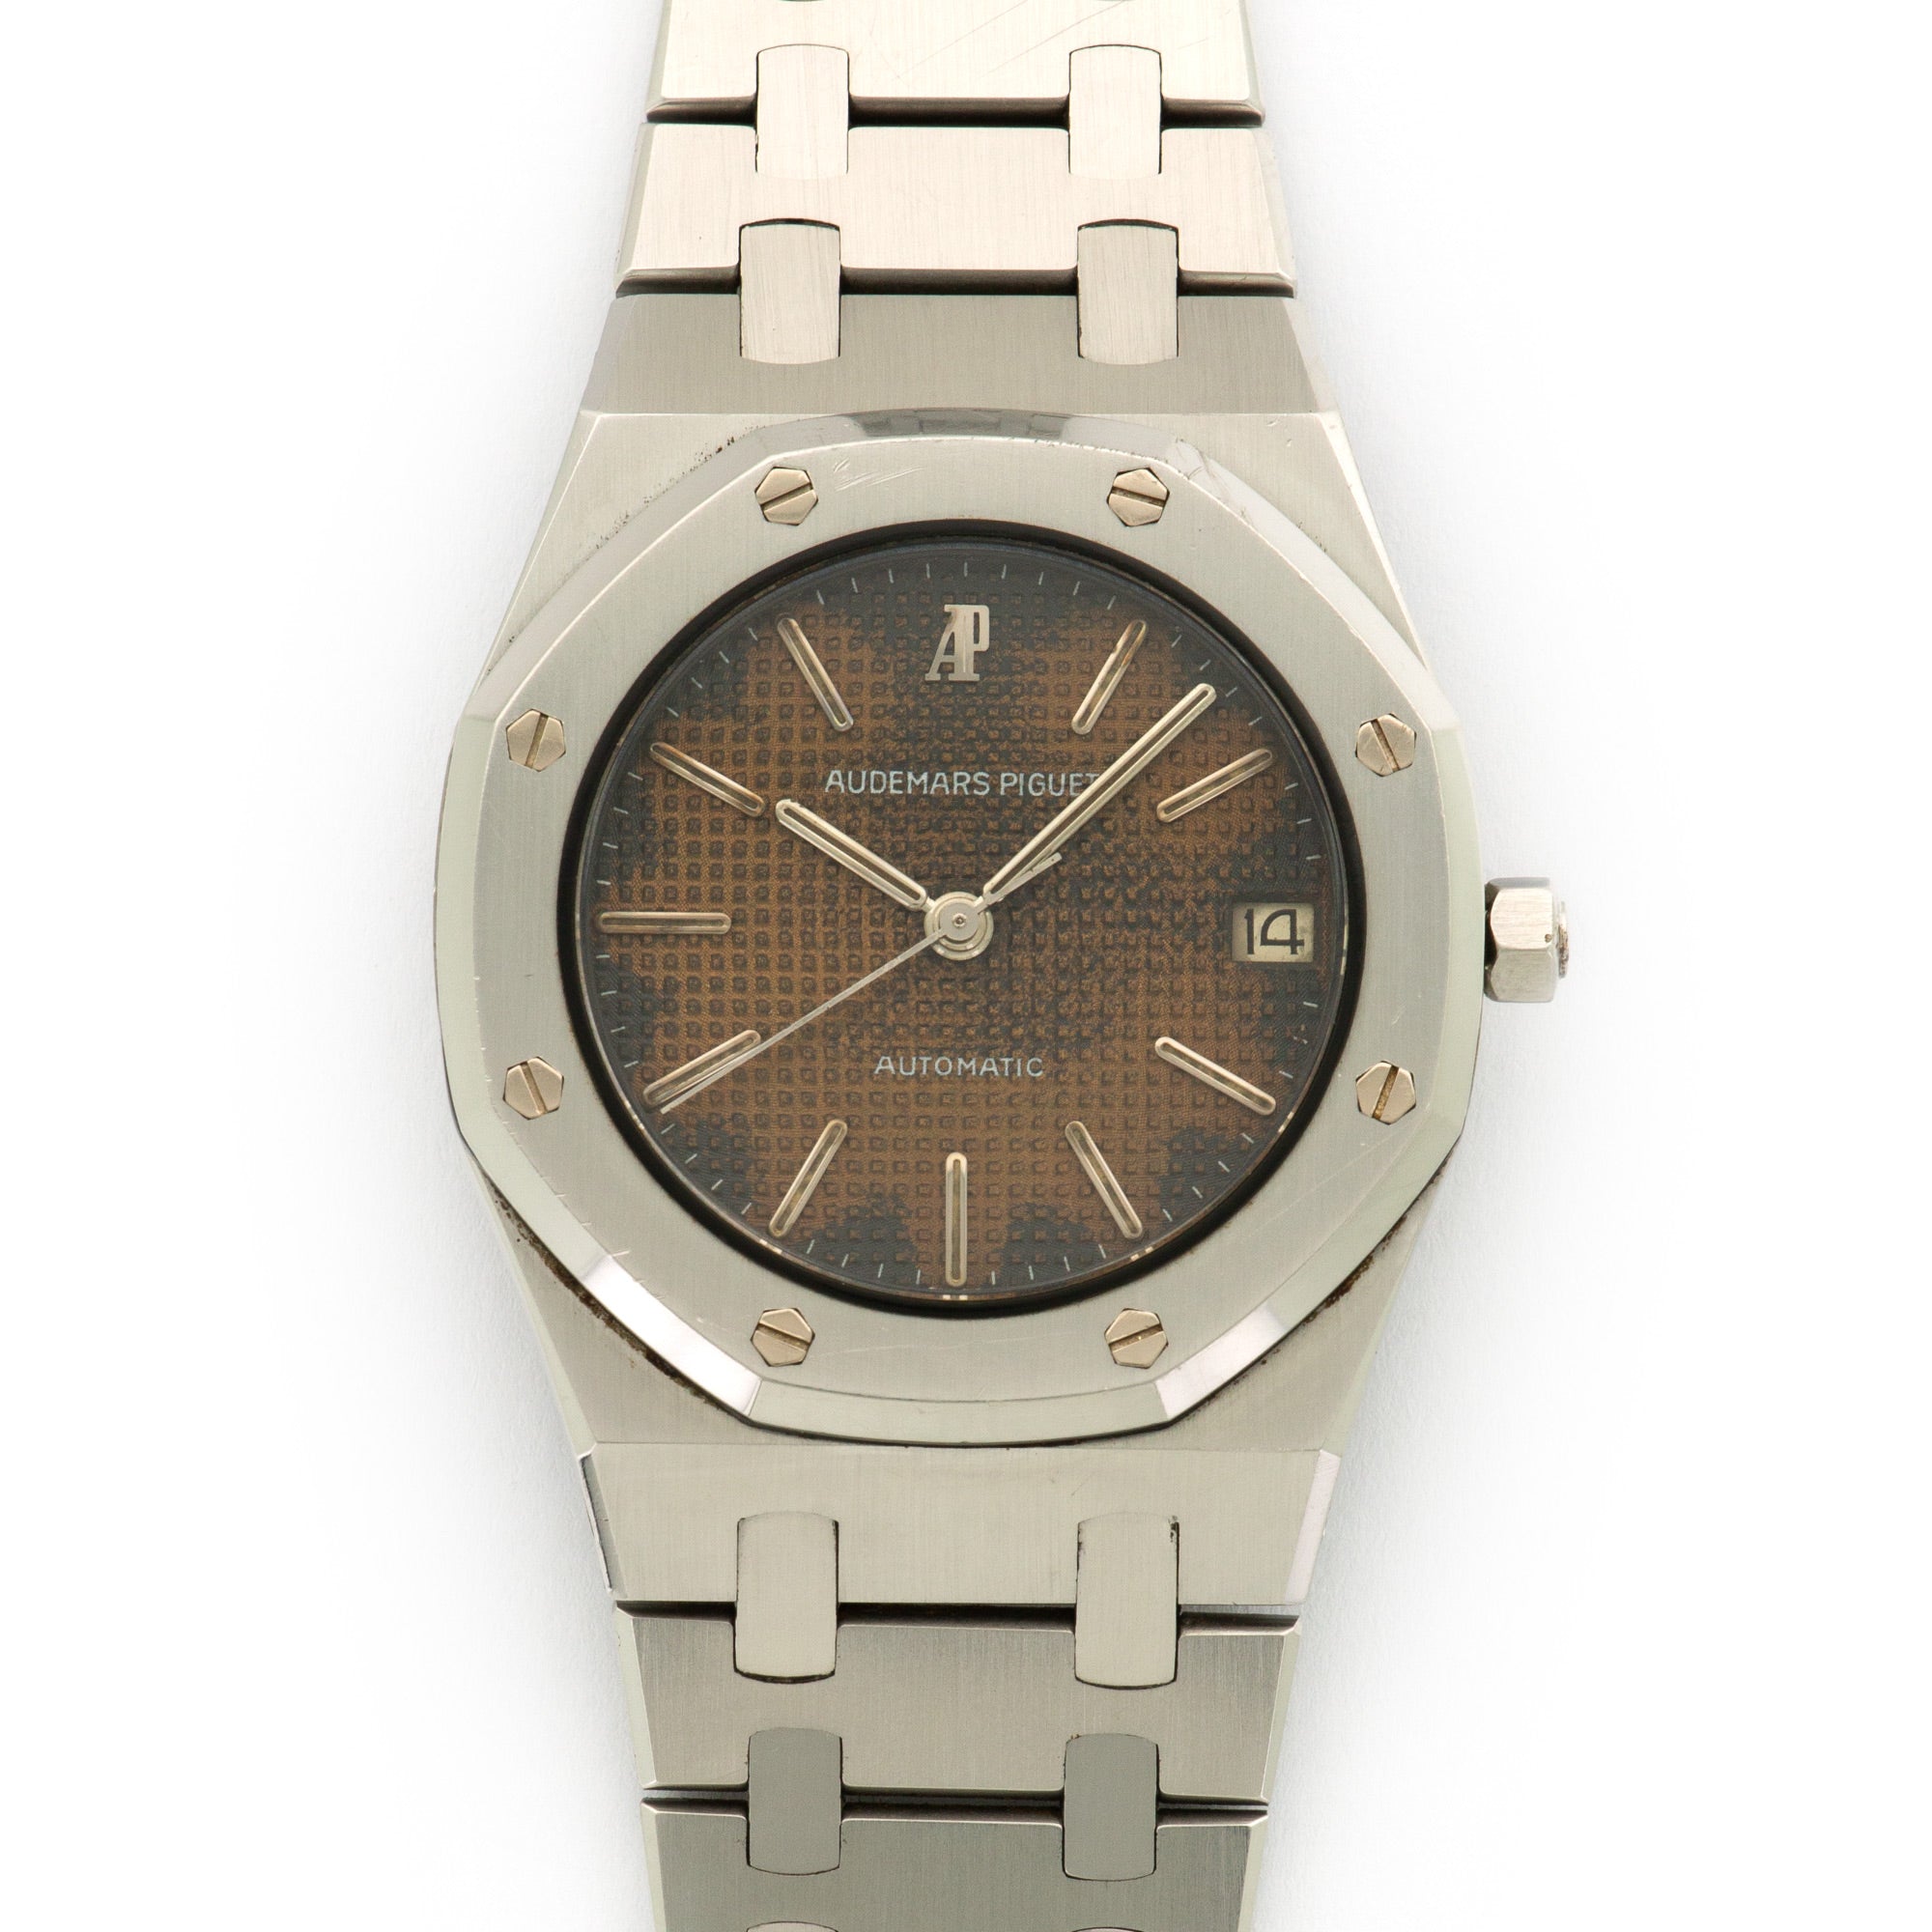 Audemars Piguet - Audemars Piguet Steel Royal Oak Watch Ref. 4100 - The Keystone Watches